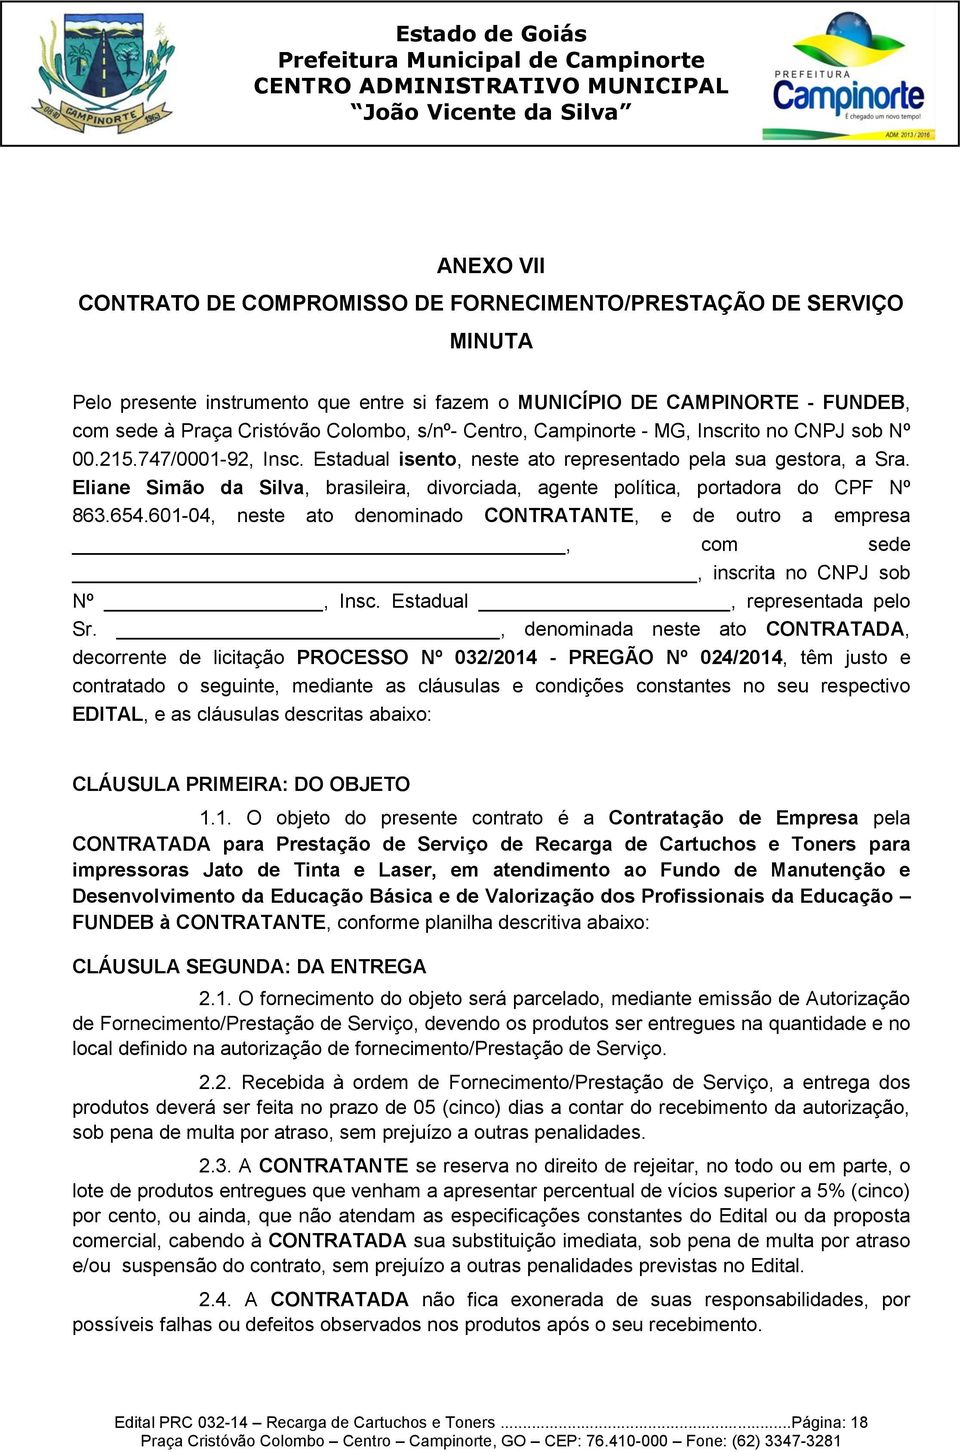 Eliane Simão da Silva, brasileira, divorciada, agente política, portadora do CPF Nº 863.654.601-04, neste ato denominado CONTRATANTE, e de outro a empresa, com sede, inscrita no CNPJ sob Nº, Insc.